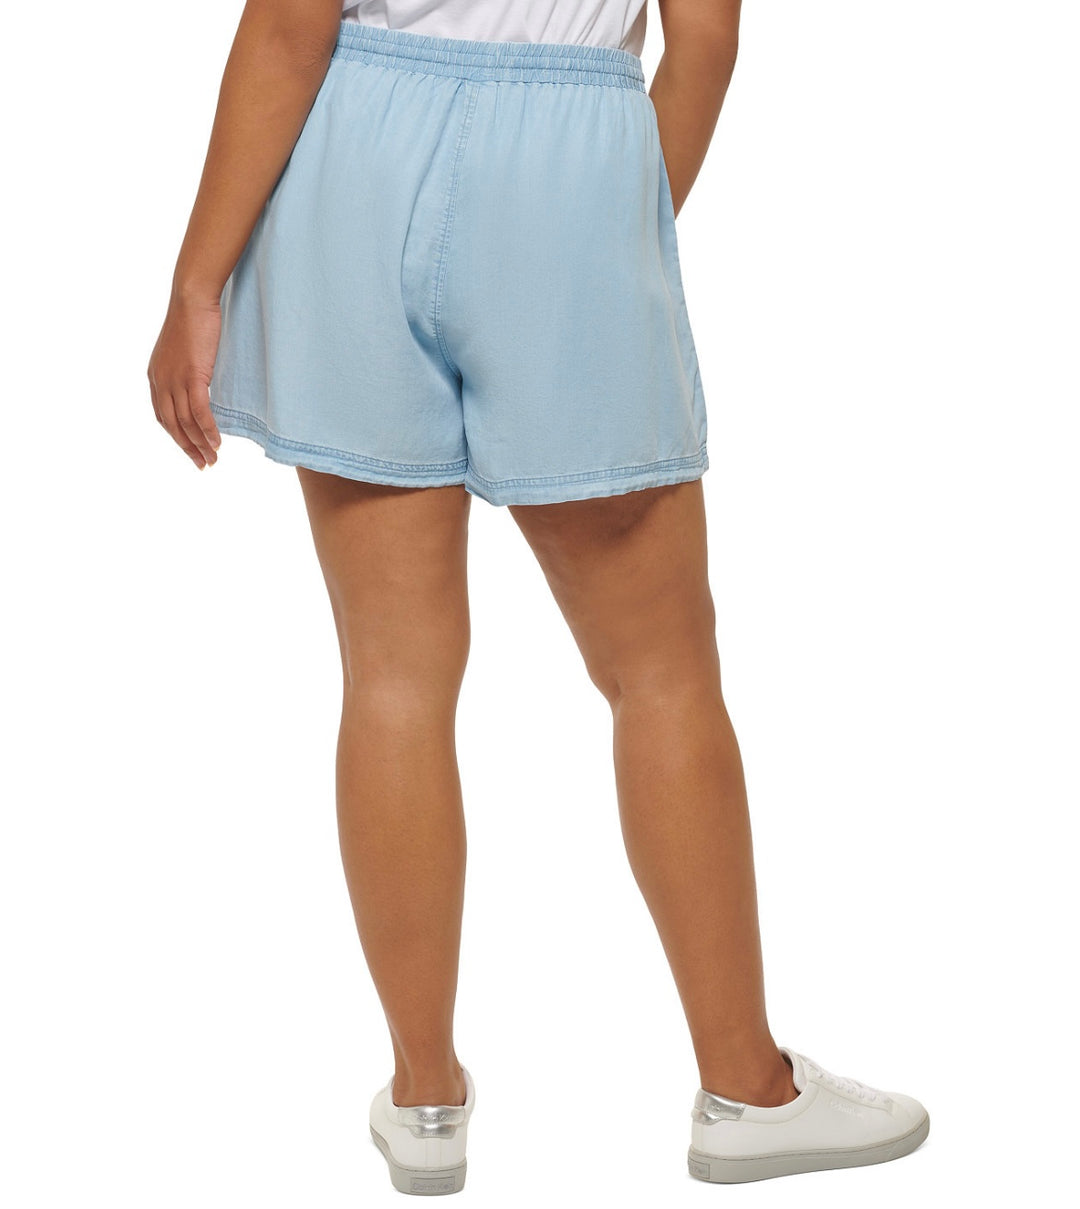 Calvin Klein Jeans Women's Trendy Drawstring Shorts Chambray Blue Plus Size 2X